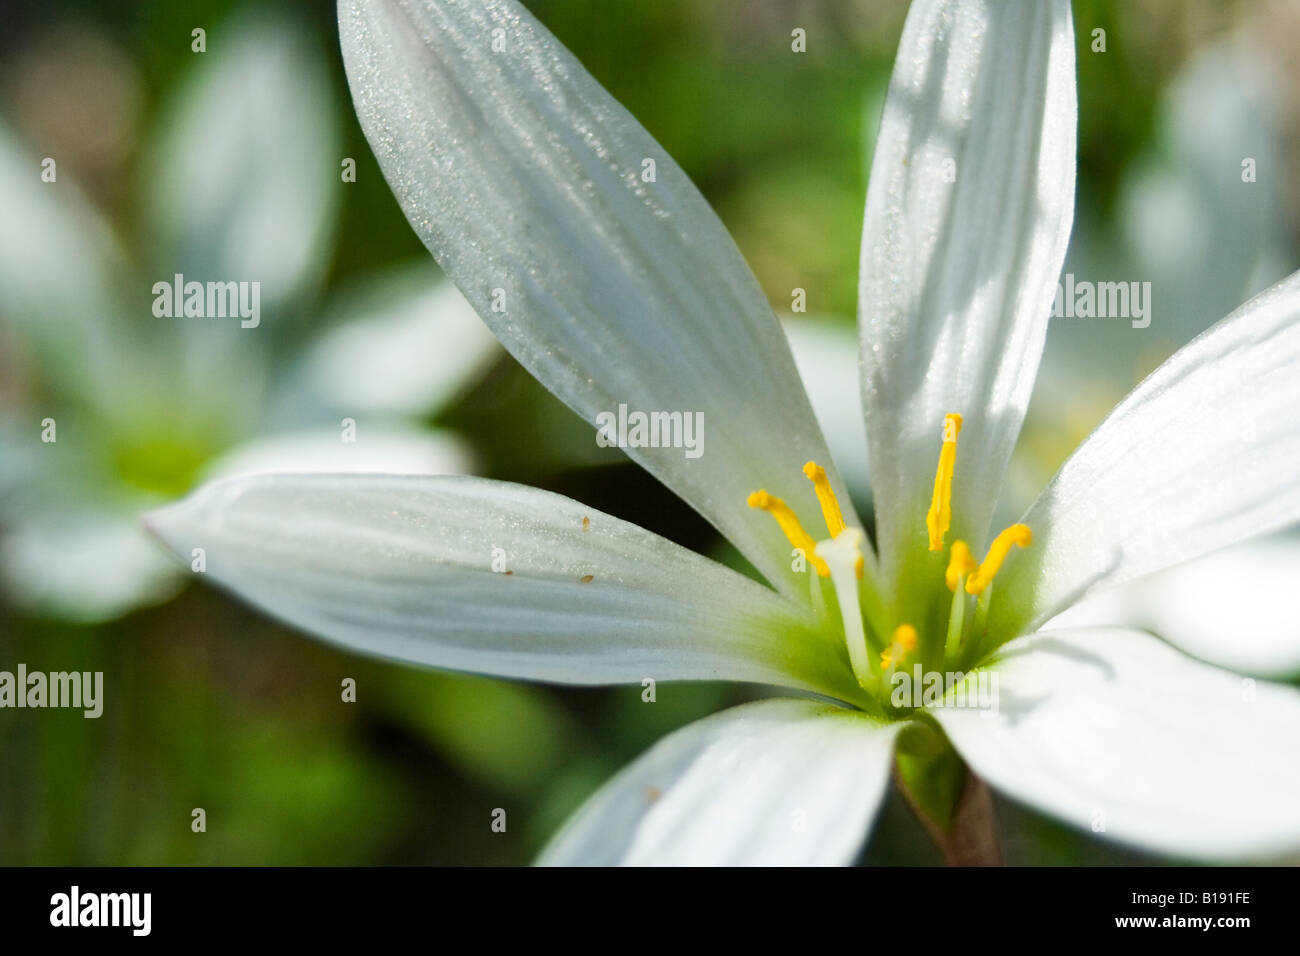 zephyranthes candida Stock Photo